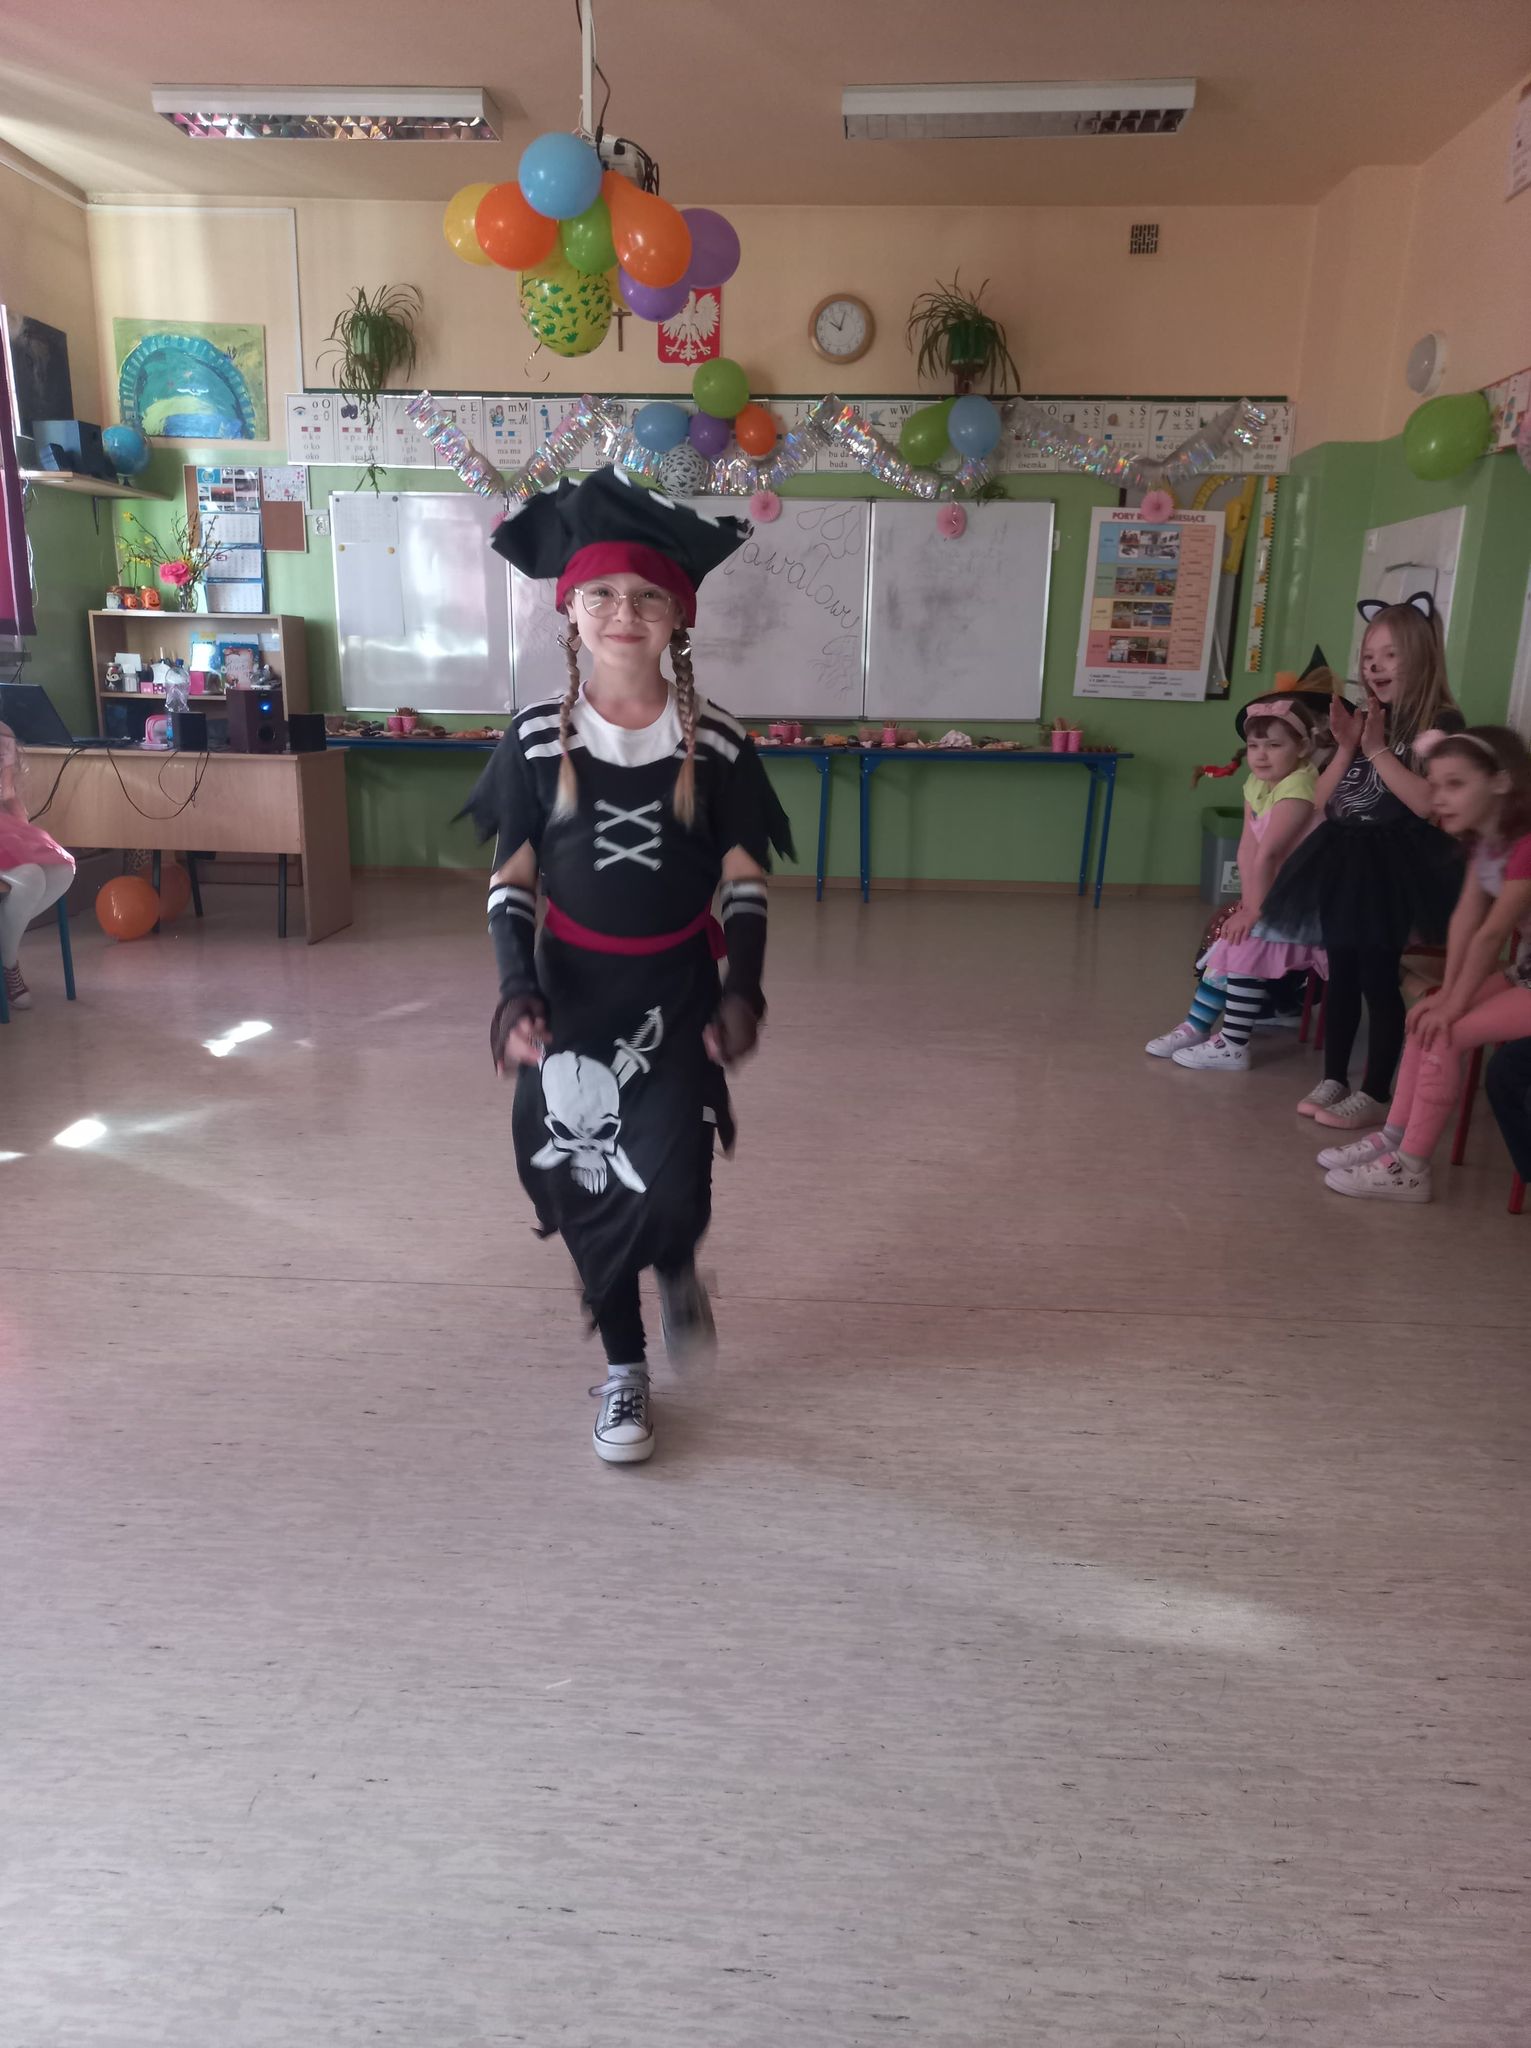 Dziewczynka w czarnym kapeluszu oraz czarnym ubraniu z trupią czaszką przebrana za pirata